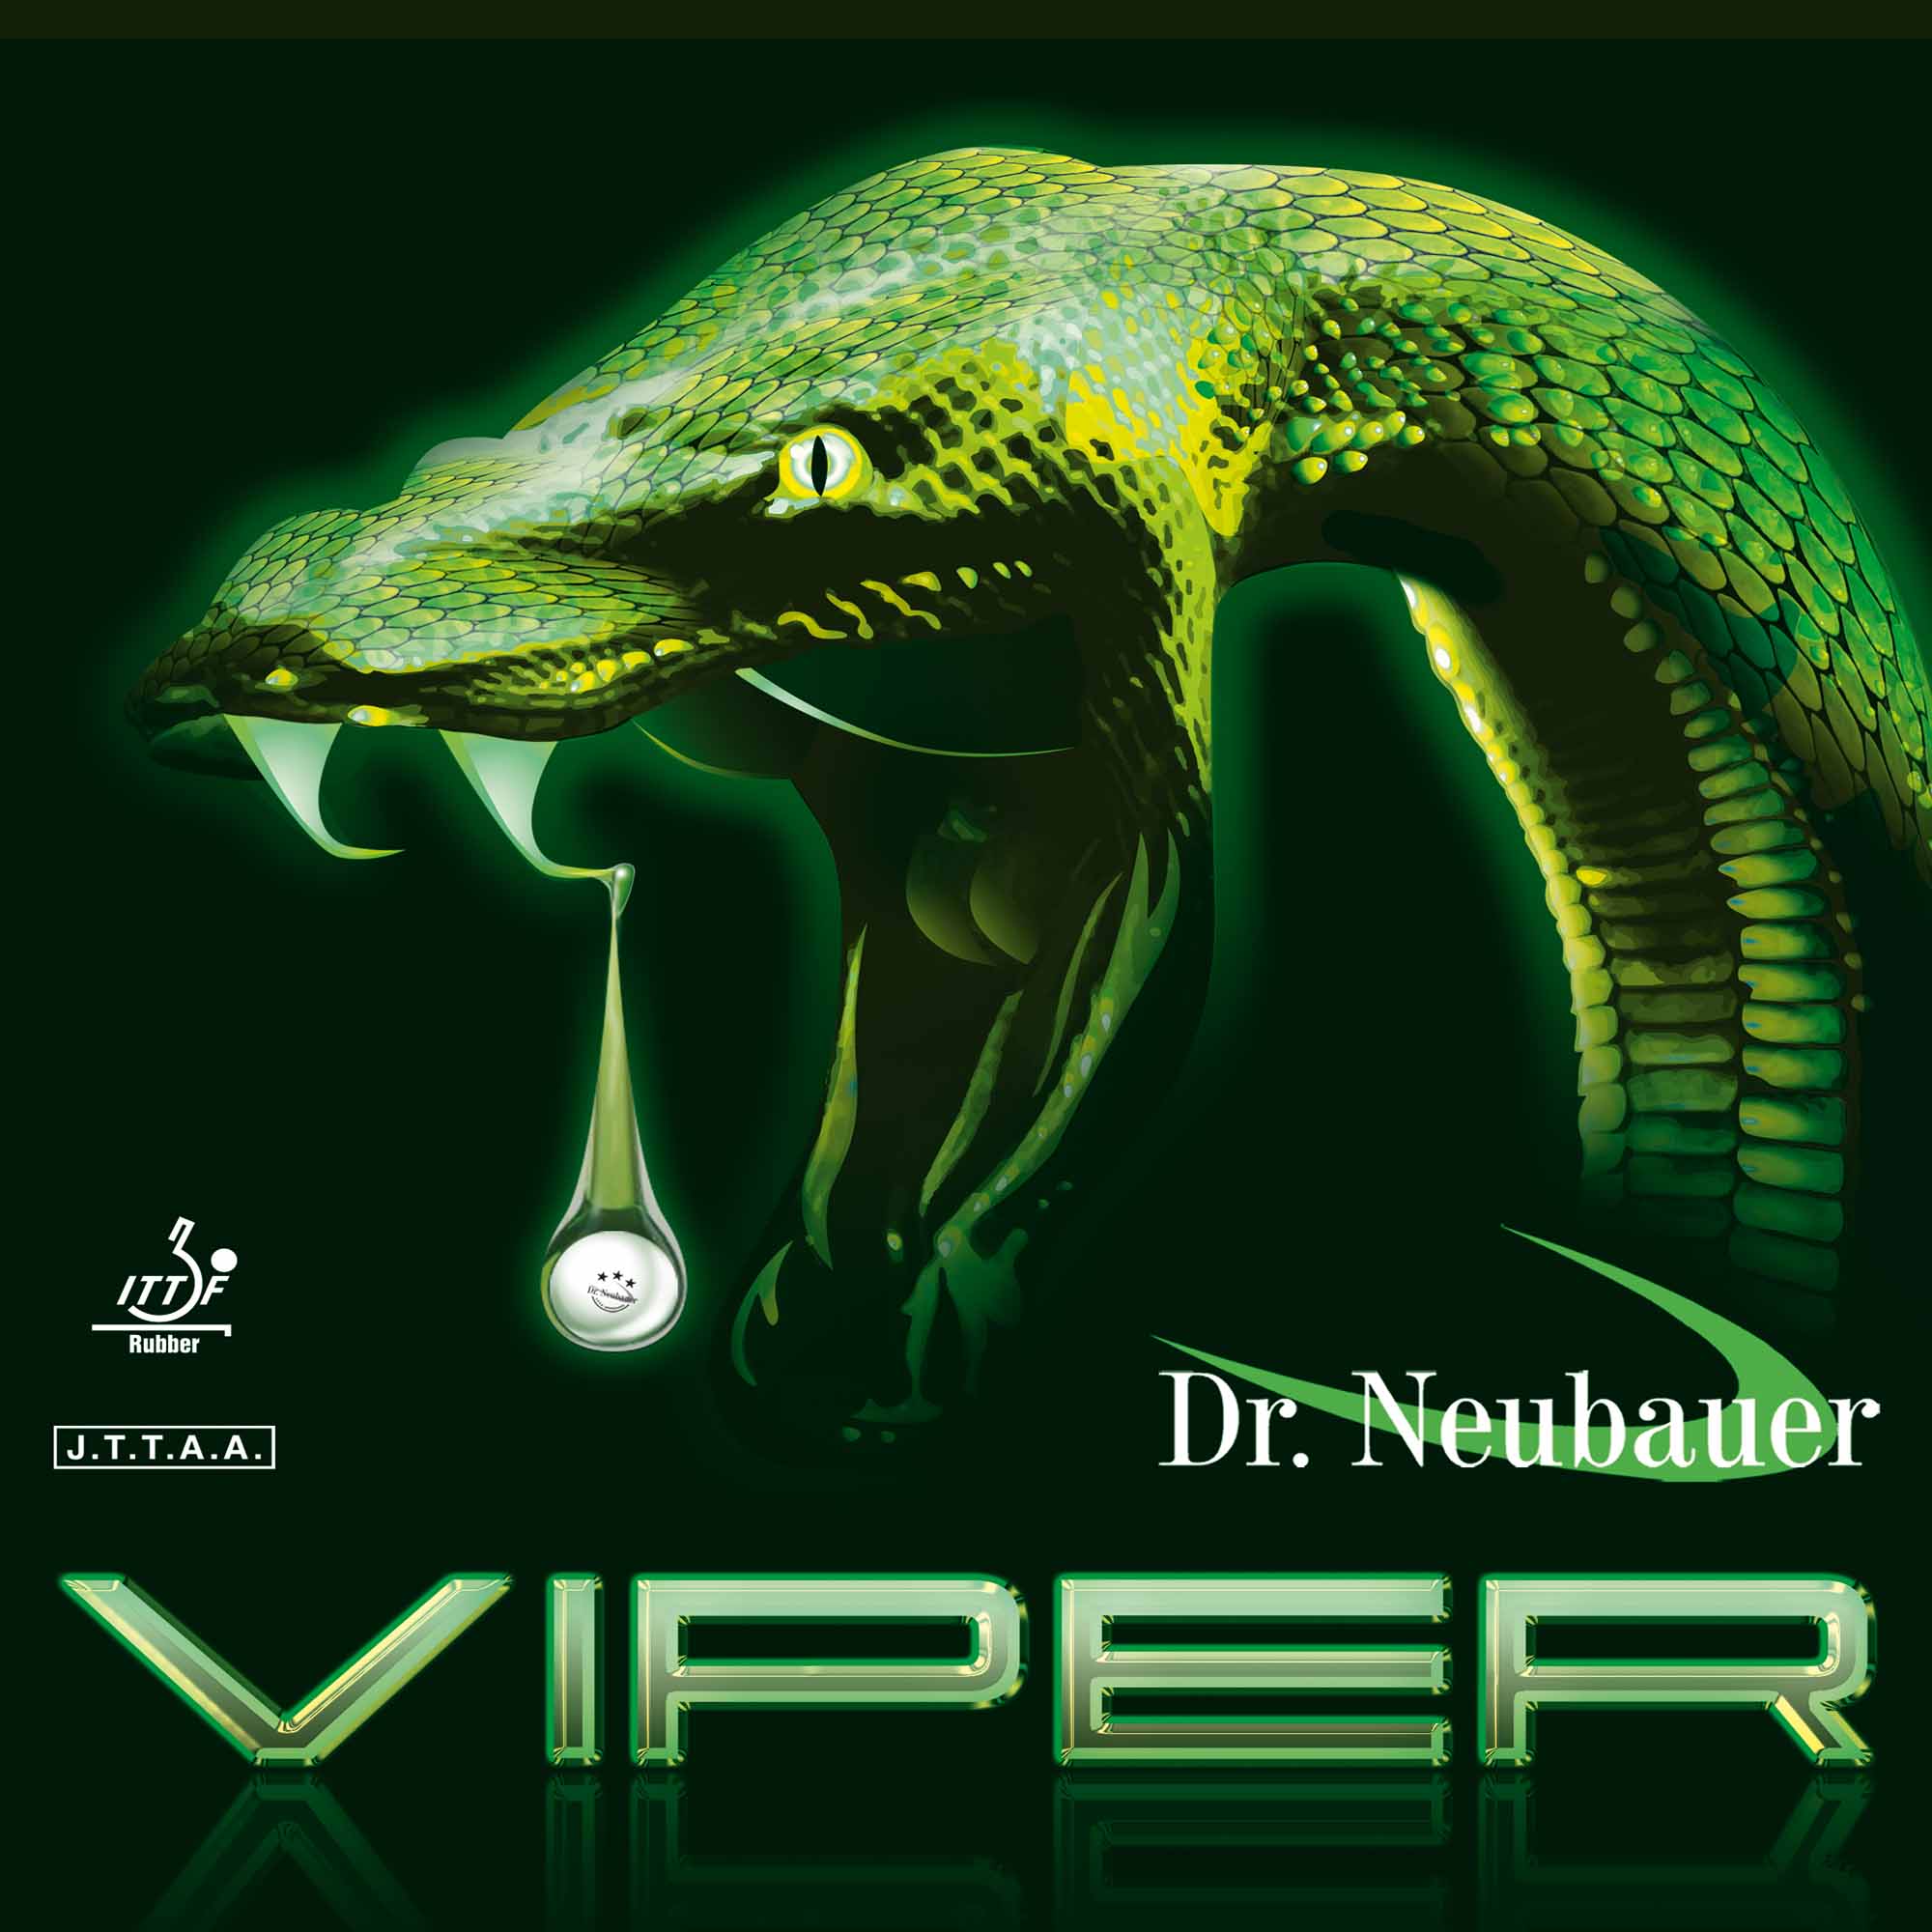 Dr. Neubauer Rubber Viper black OX